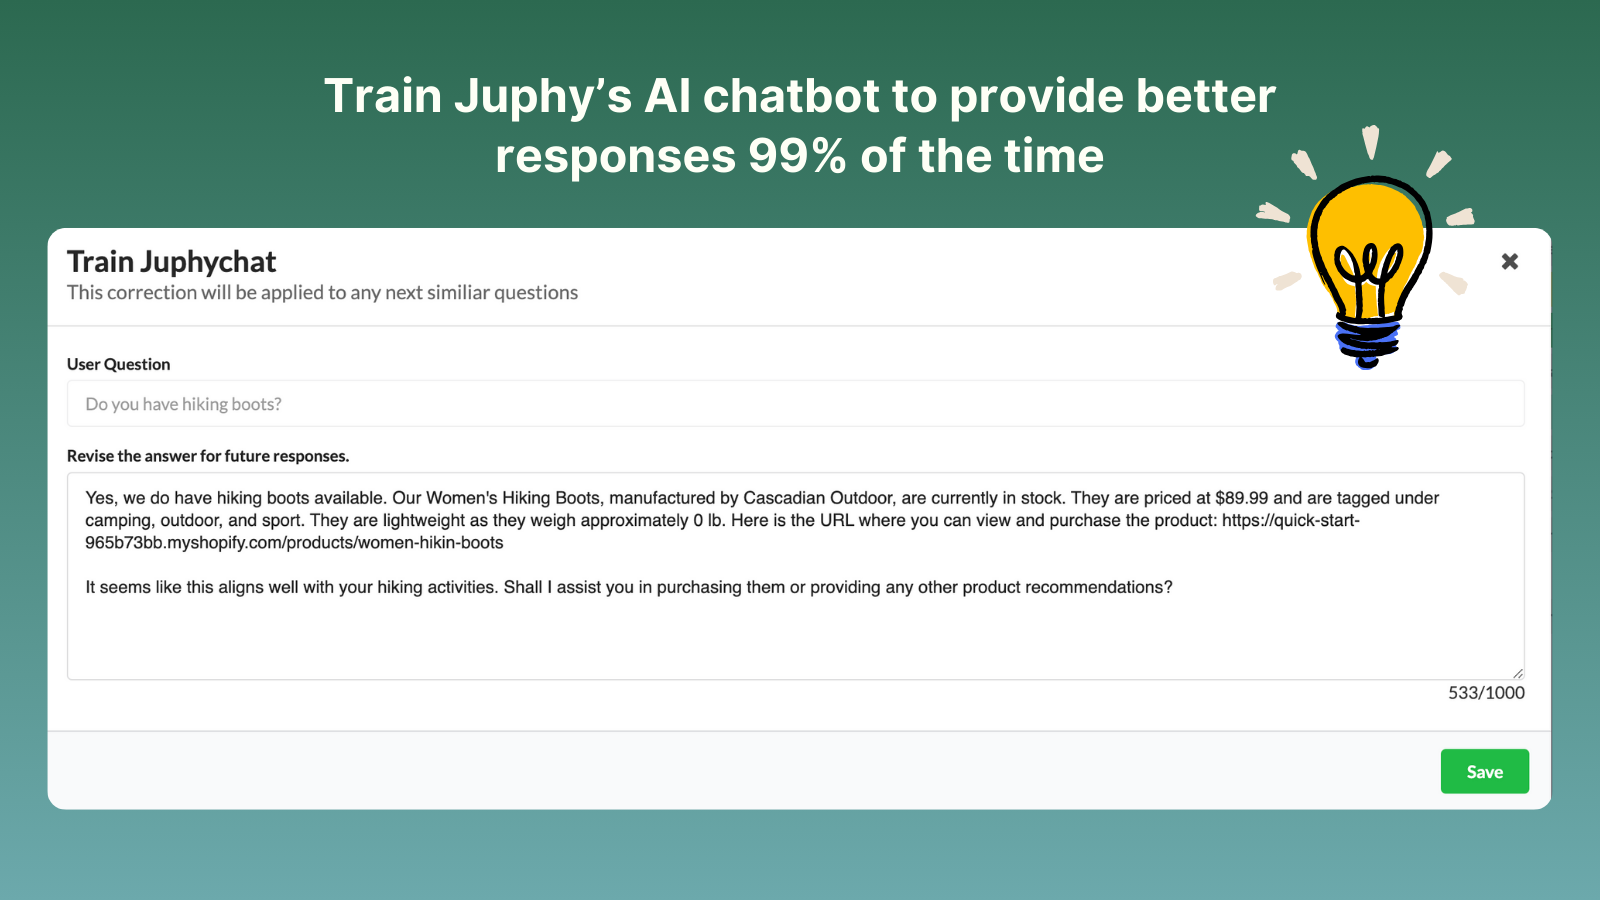 Former l'assistant d'achat IA de Juphy pour donner de meilleures réponses